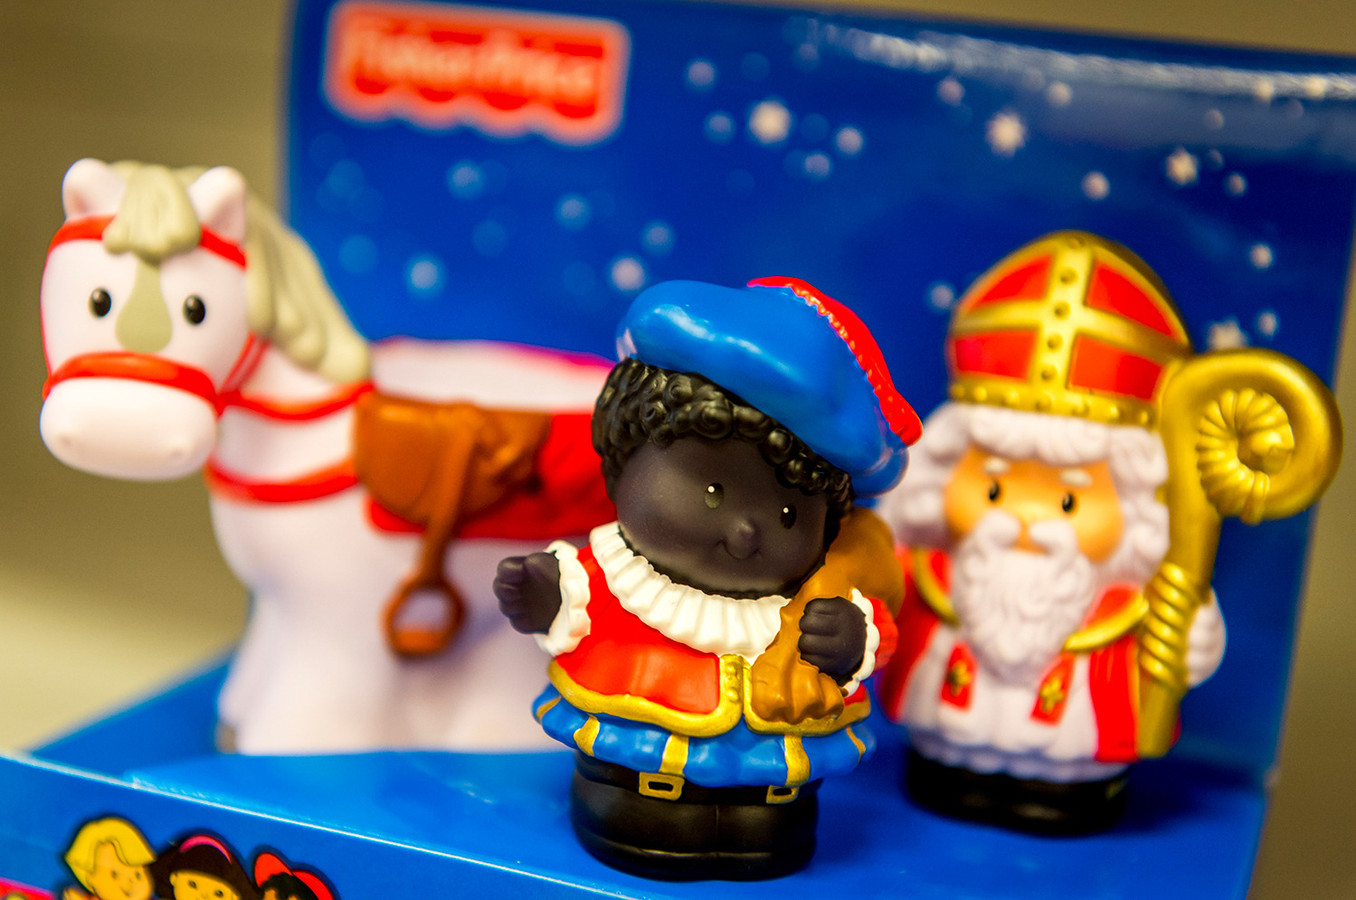 Wissen Begrip dood gaan Ook speelgoedpoppetjes Zwarte Piet onder vuur | Foto | AD.nl